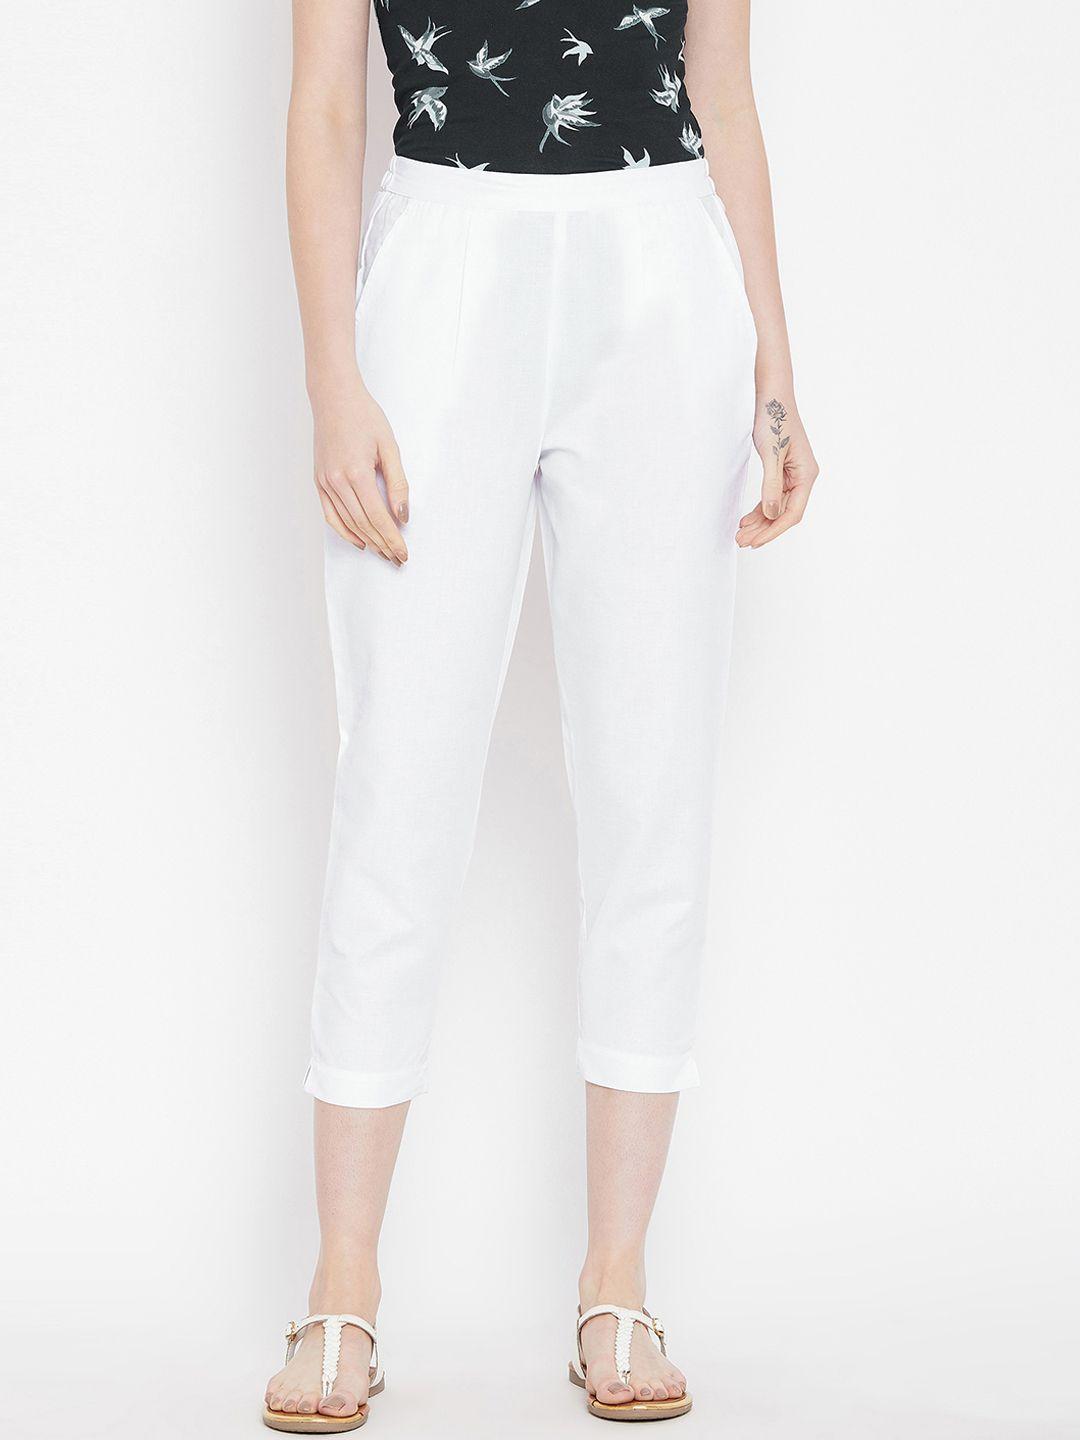 bitterlime-women-white-relaxed-regular-fit-self-design-cigarette-trousers